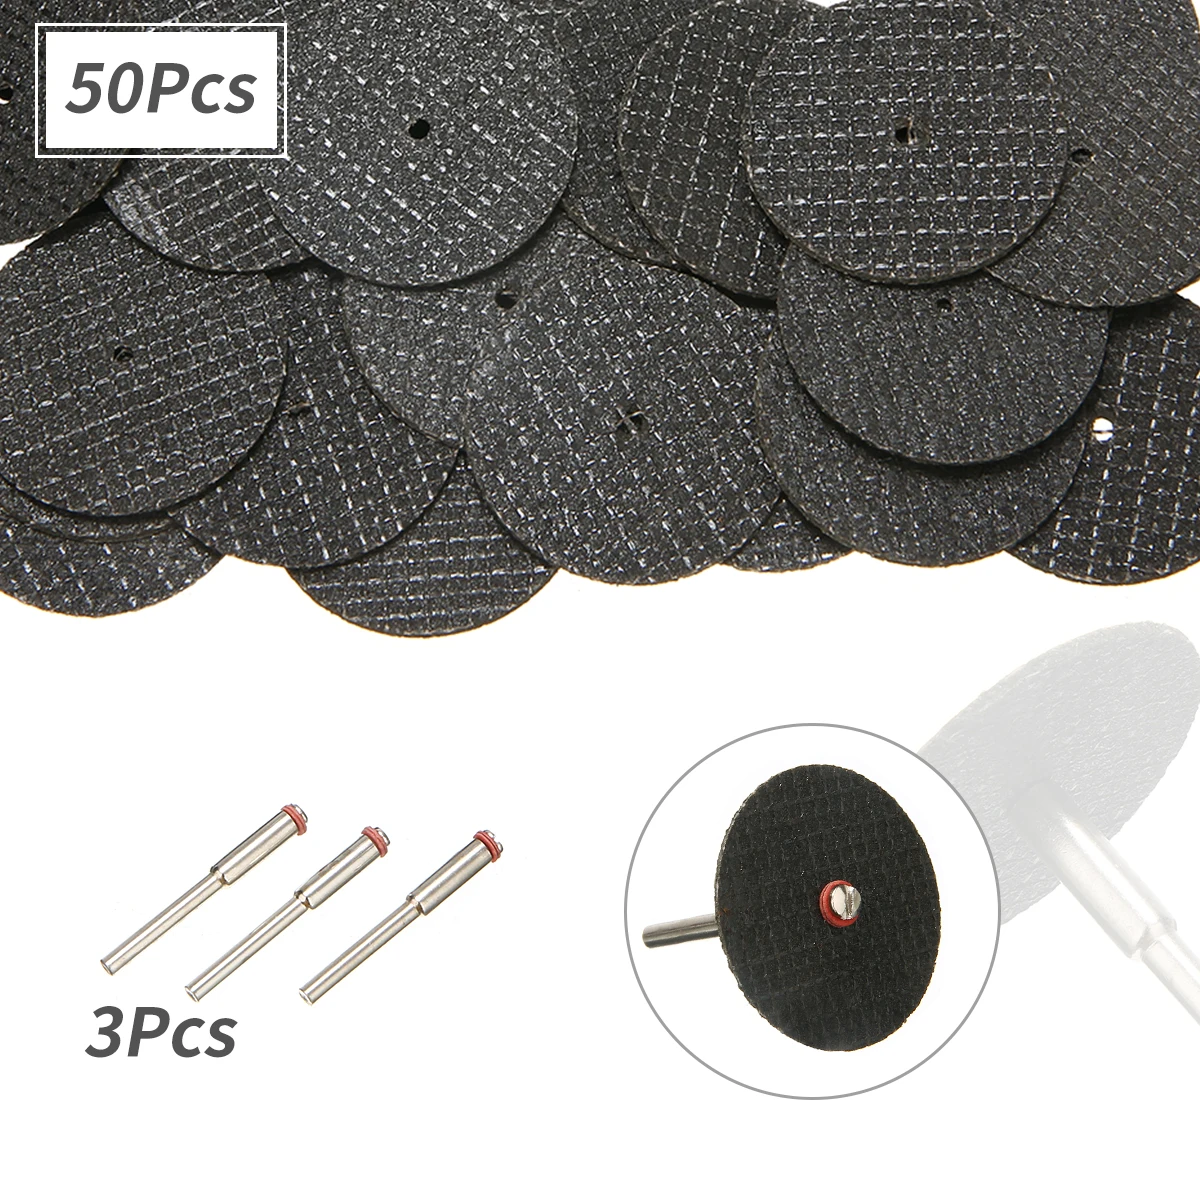 50Pcs High Quality Fiberglass Reinforced Cut Off Wheel Rotary Discs W/ 3pcs 1/8